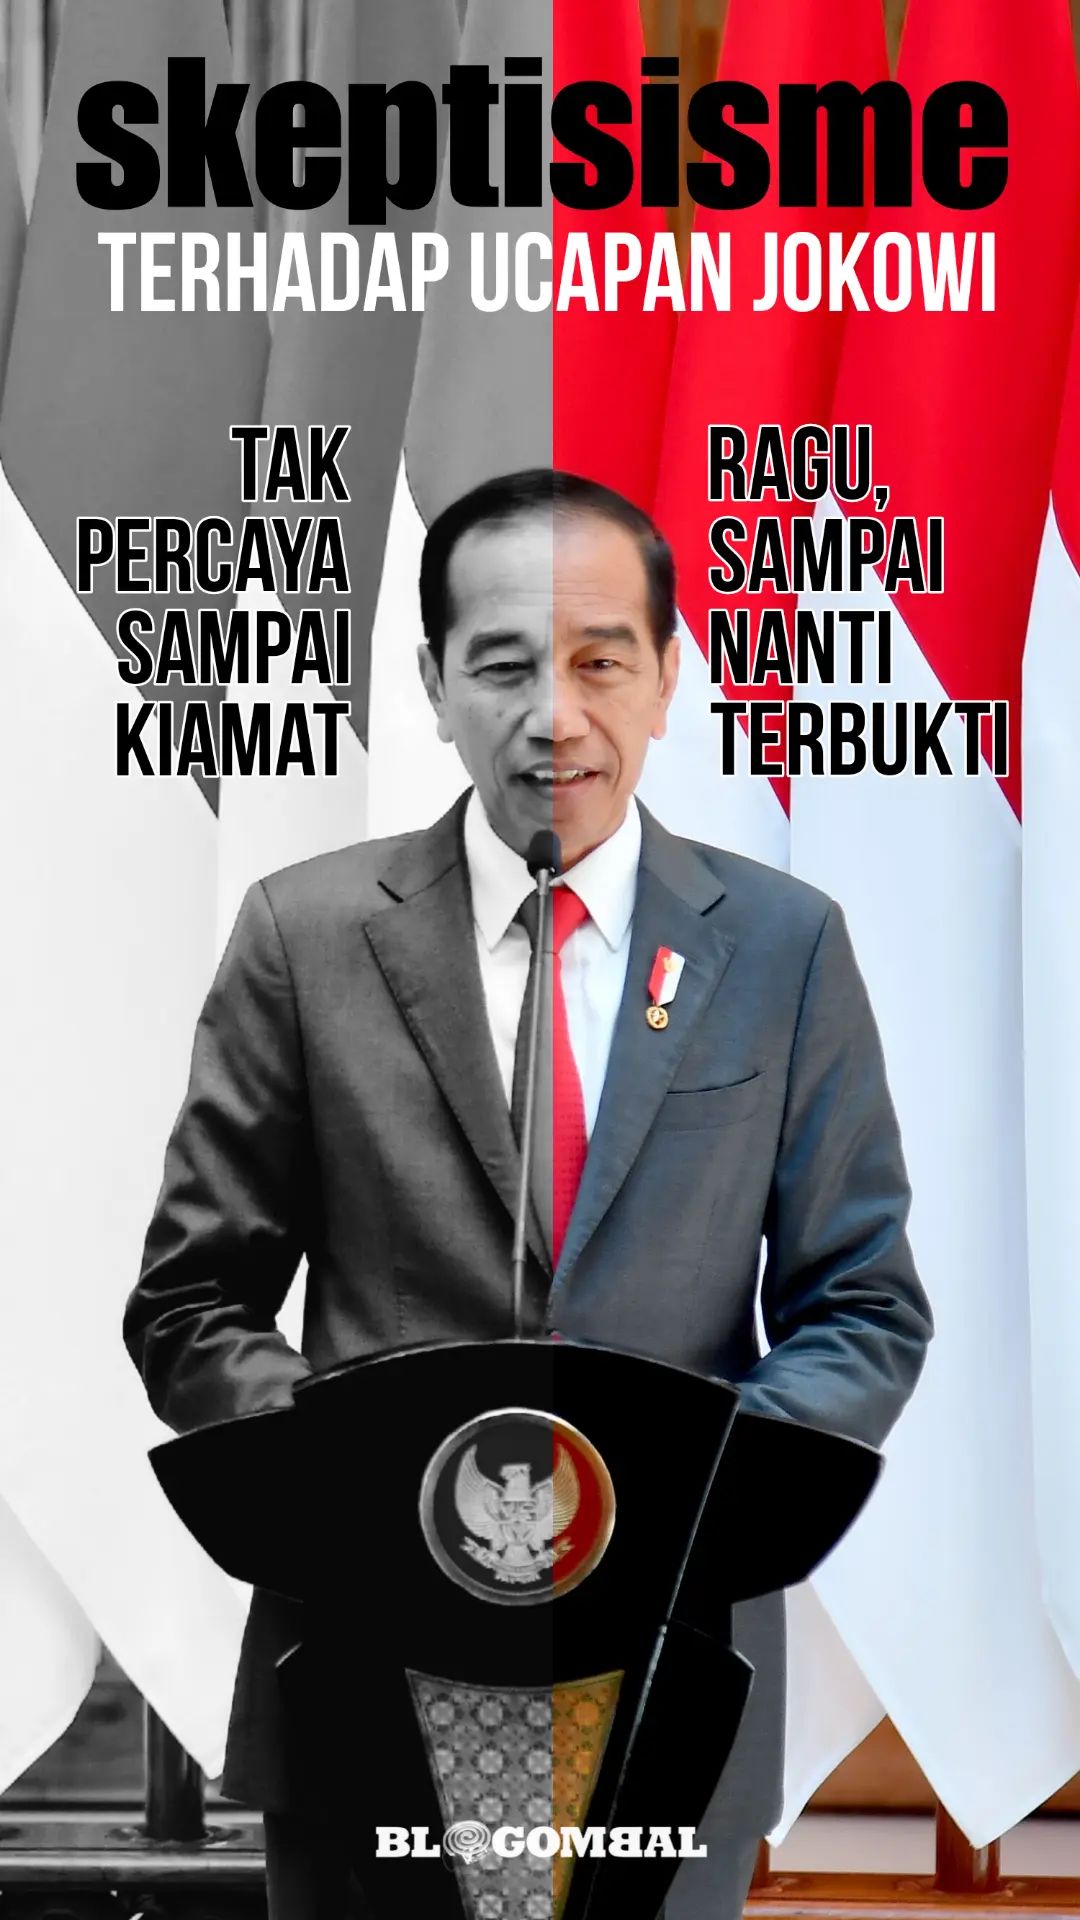 Skeptisisme positif dan negatif terhadap Jokowi 